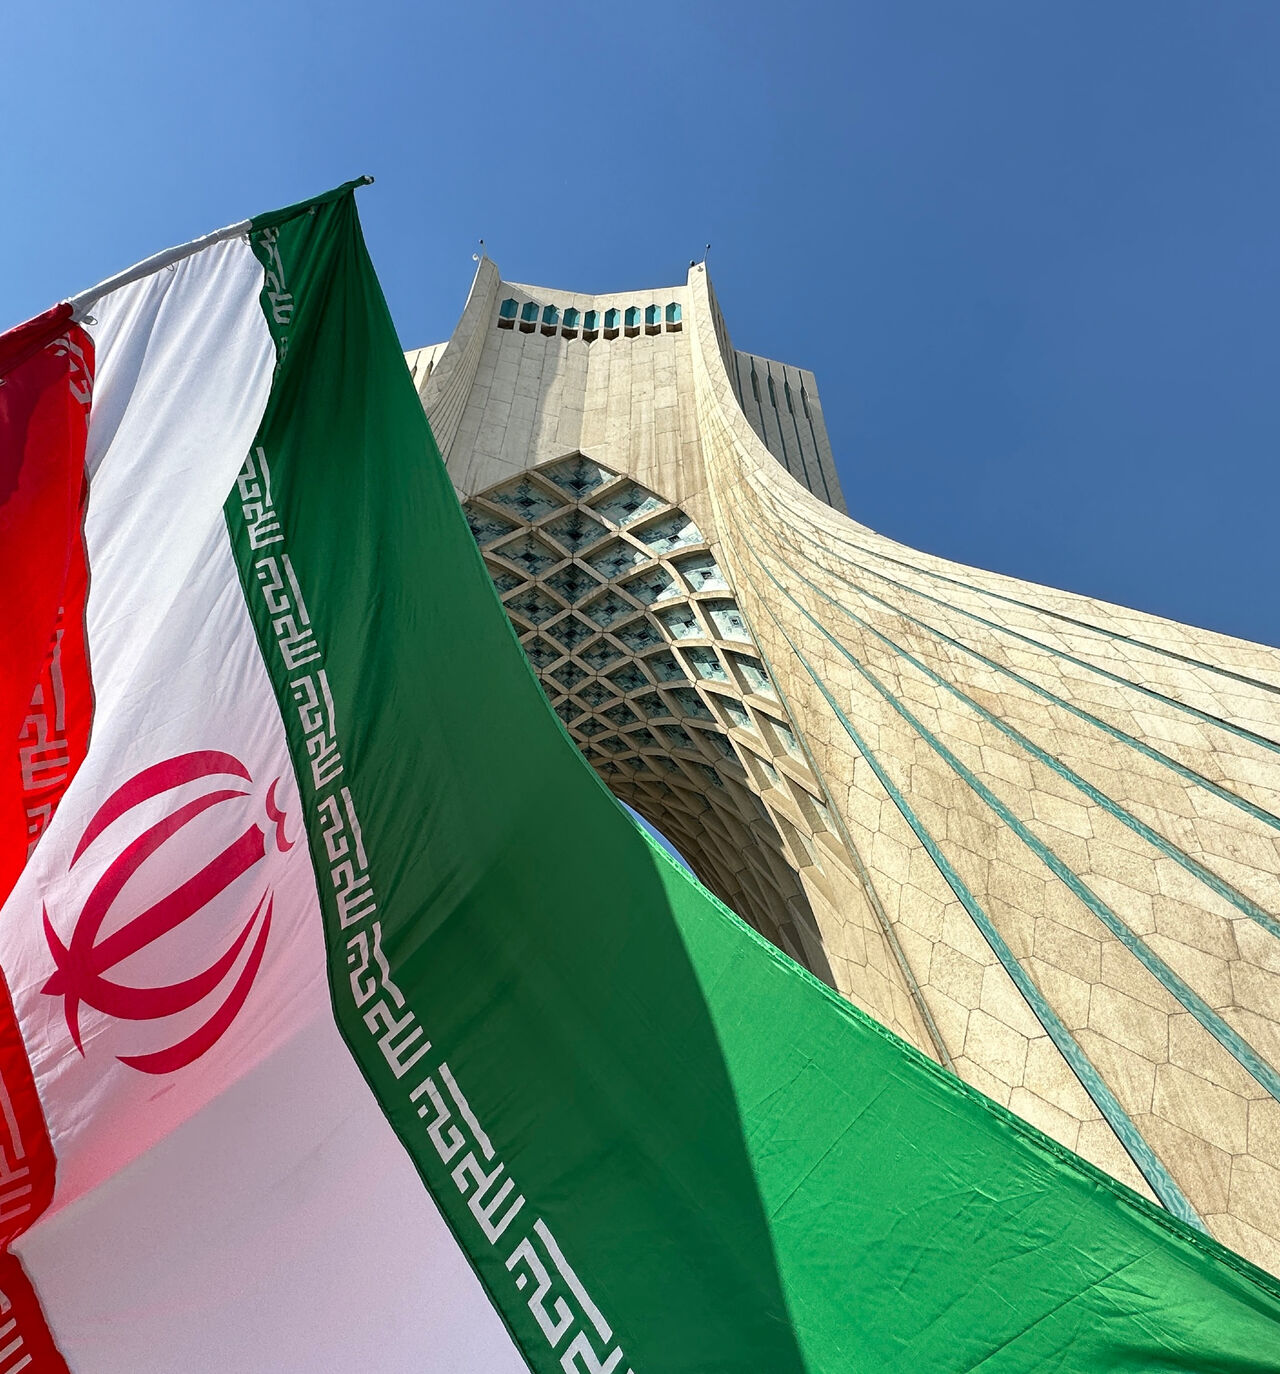 Iran cover image